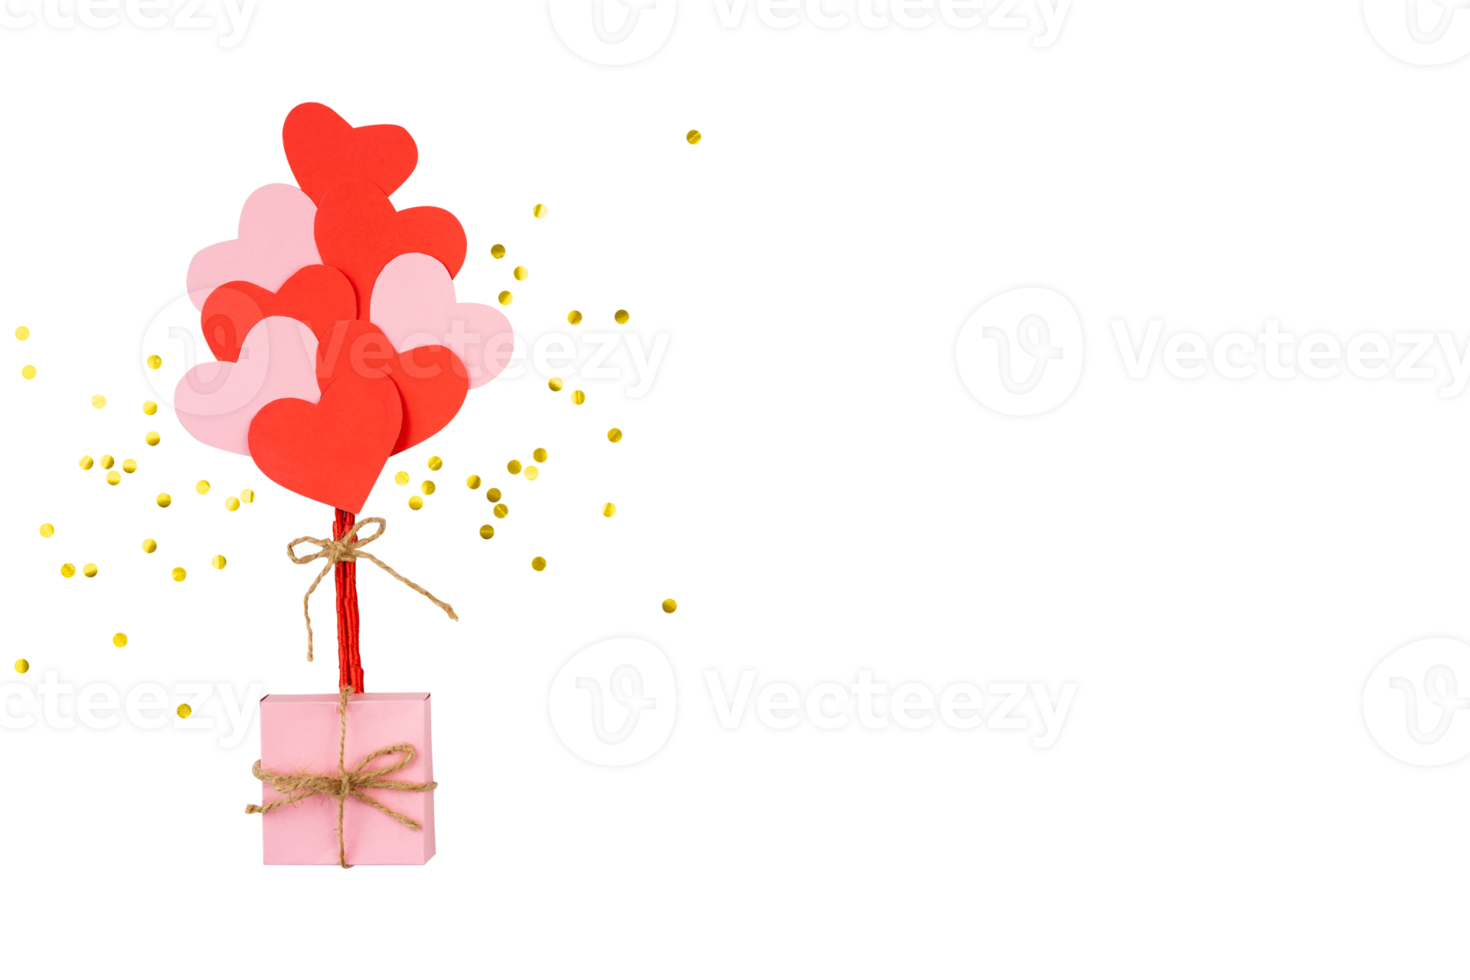 rosa gåva låda med hjärtan ballong och konfetti png